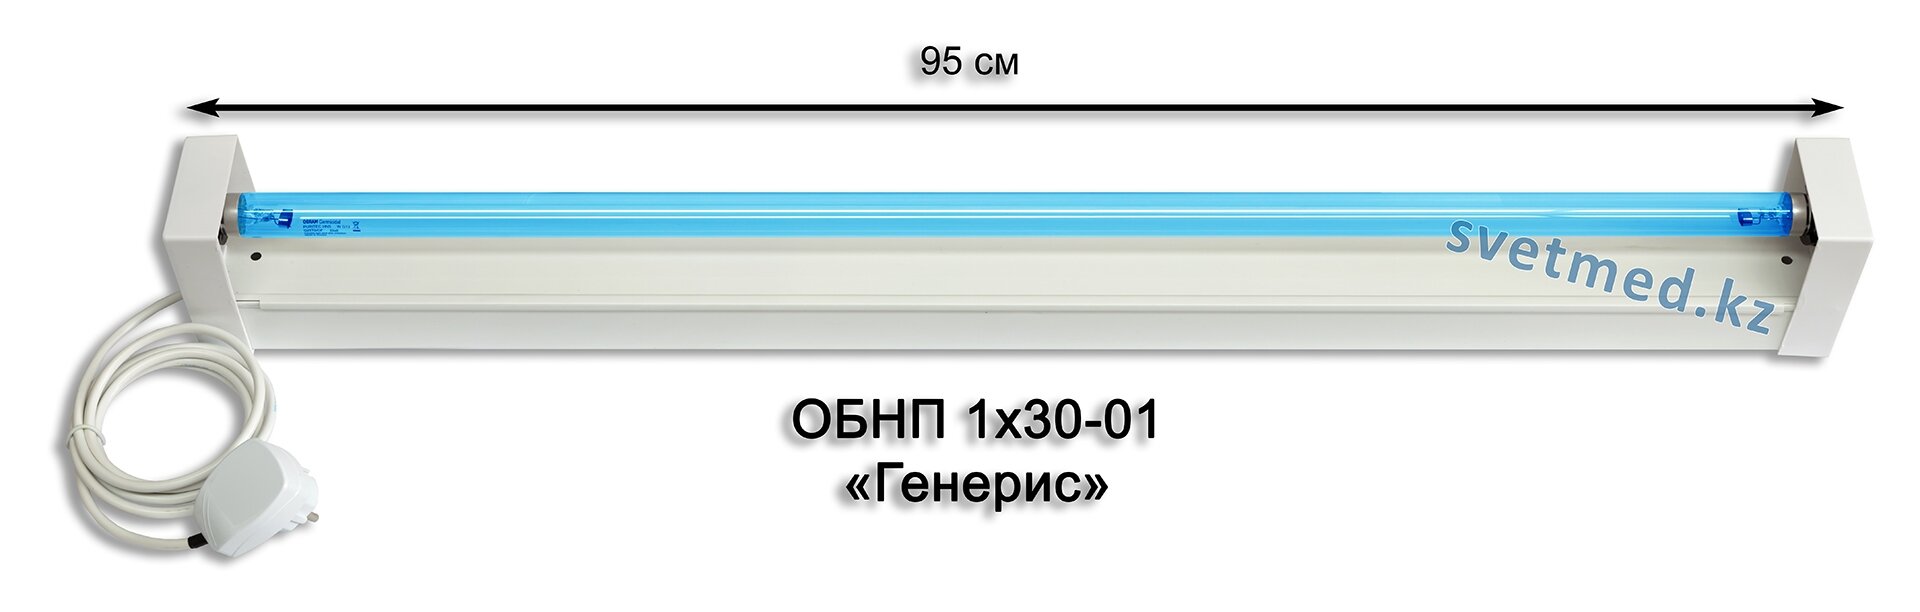 Облучатель бактерицидный настенный ОБНП 1х30-01 Генерис.jpg